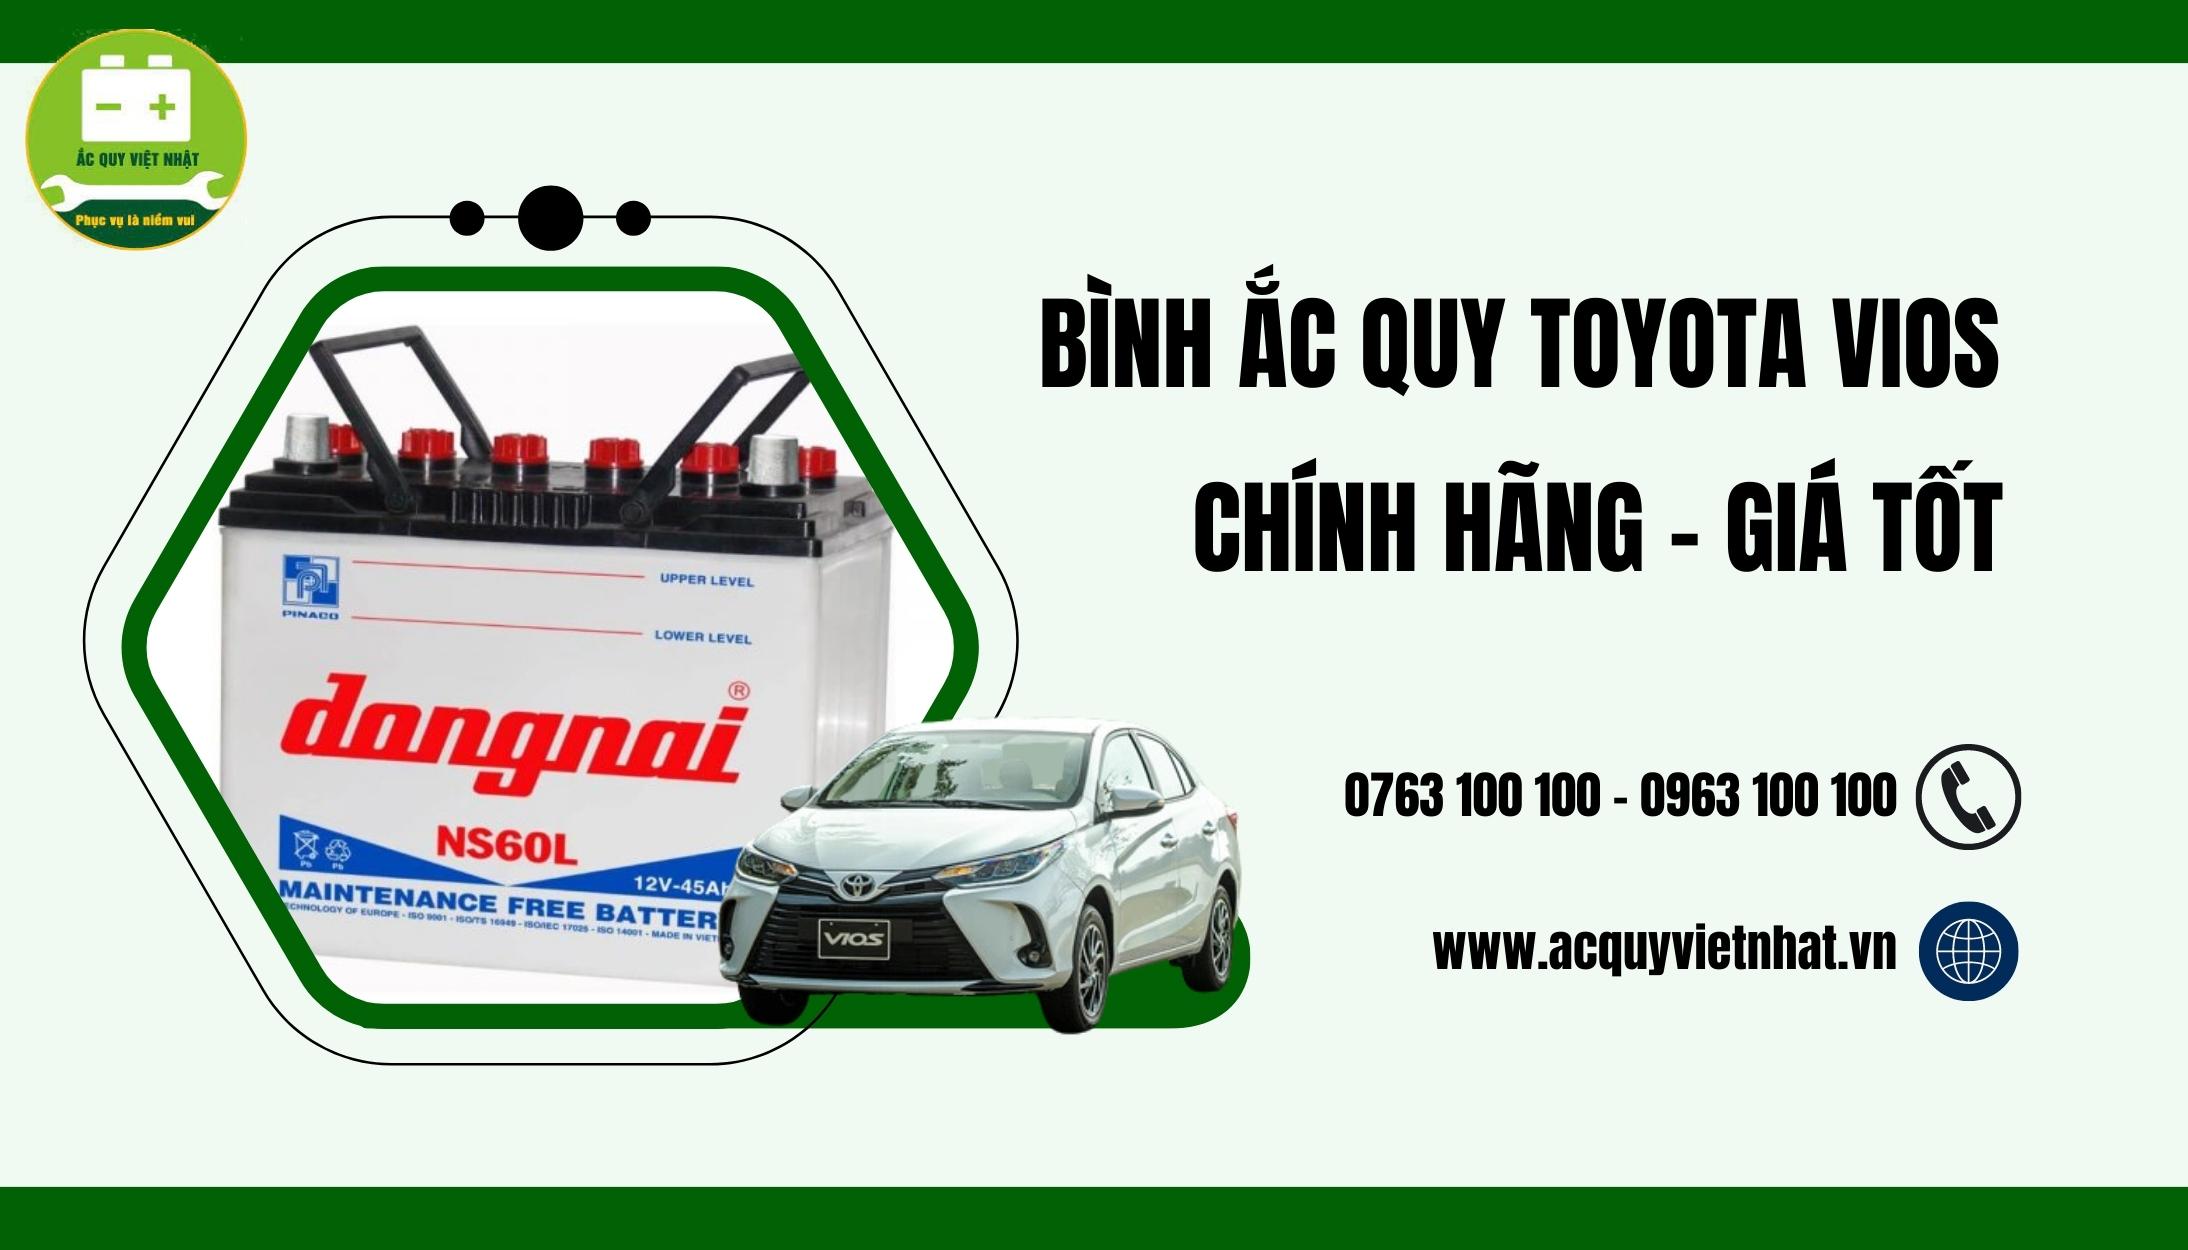 Mua acquy Toyota Vios tại Việt Nhật